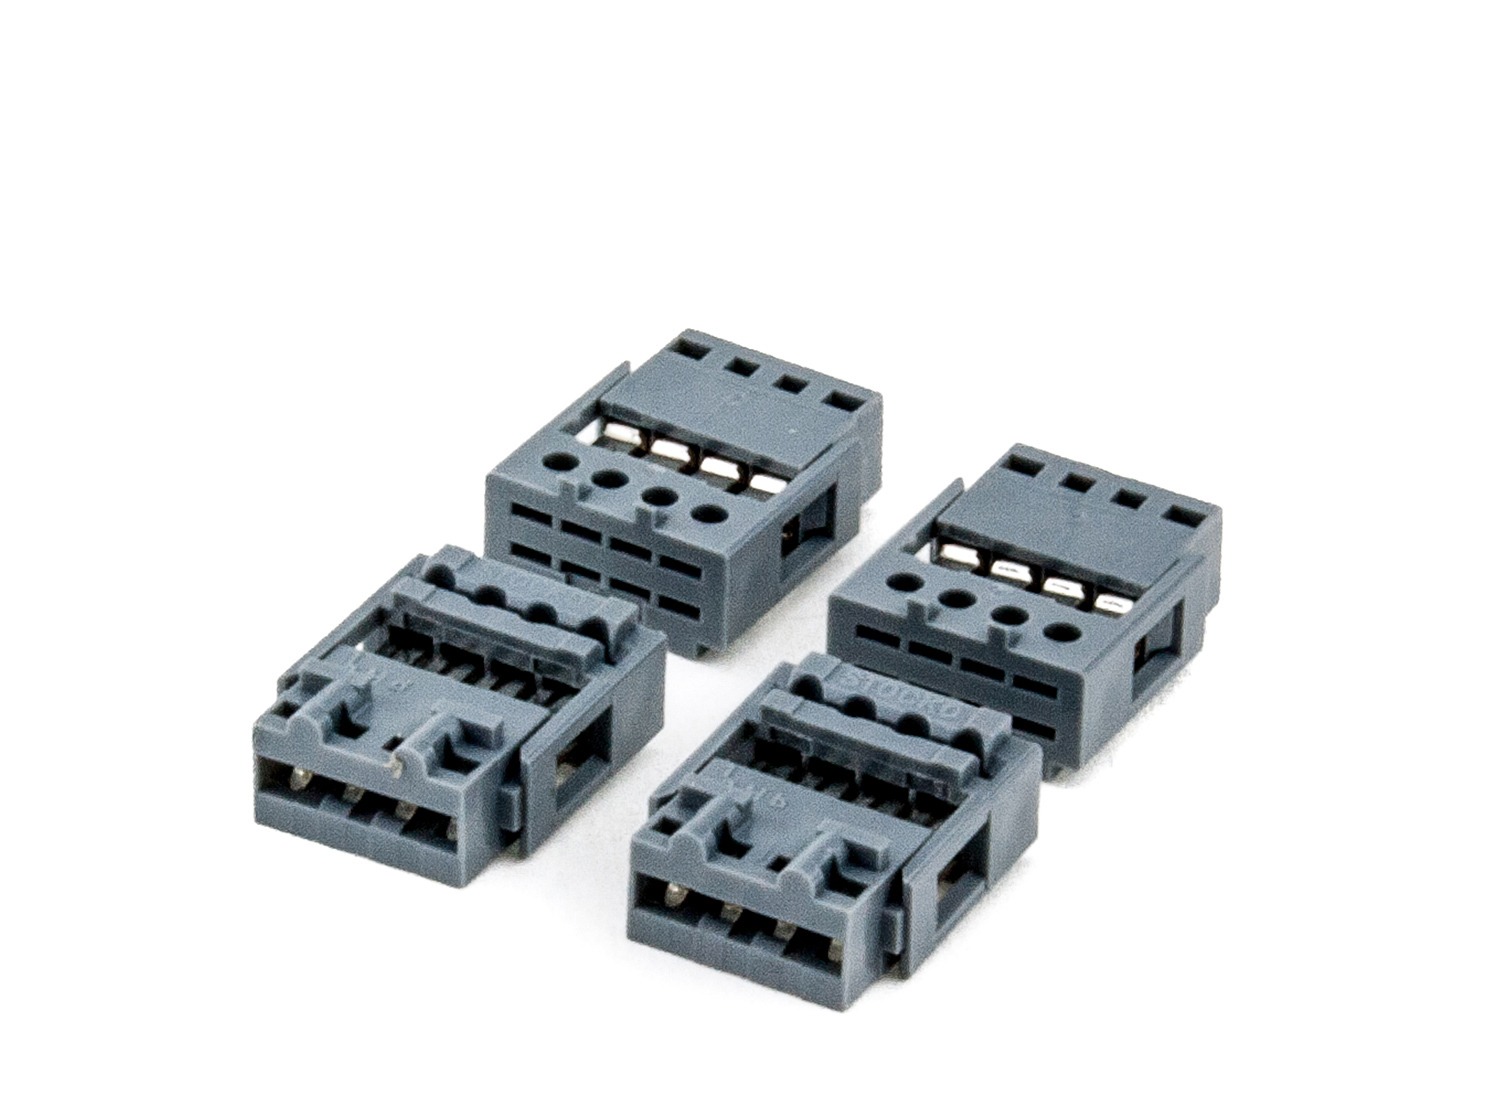 Stecker 4-polig, grau zum Anlöten (5er-Pack) # 86210, # 85222, Multiplex, Steckersysteme, Elektroflug-Zubehör